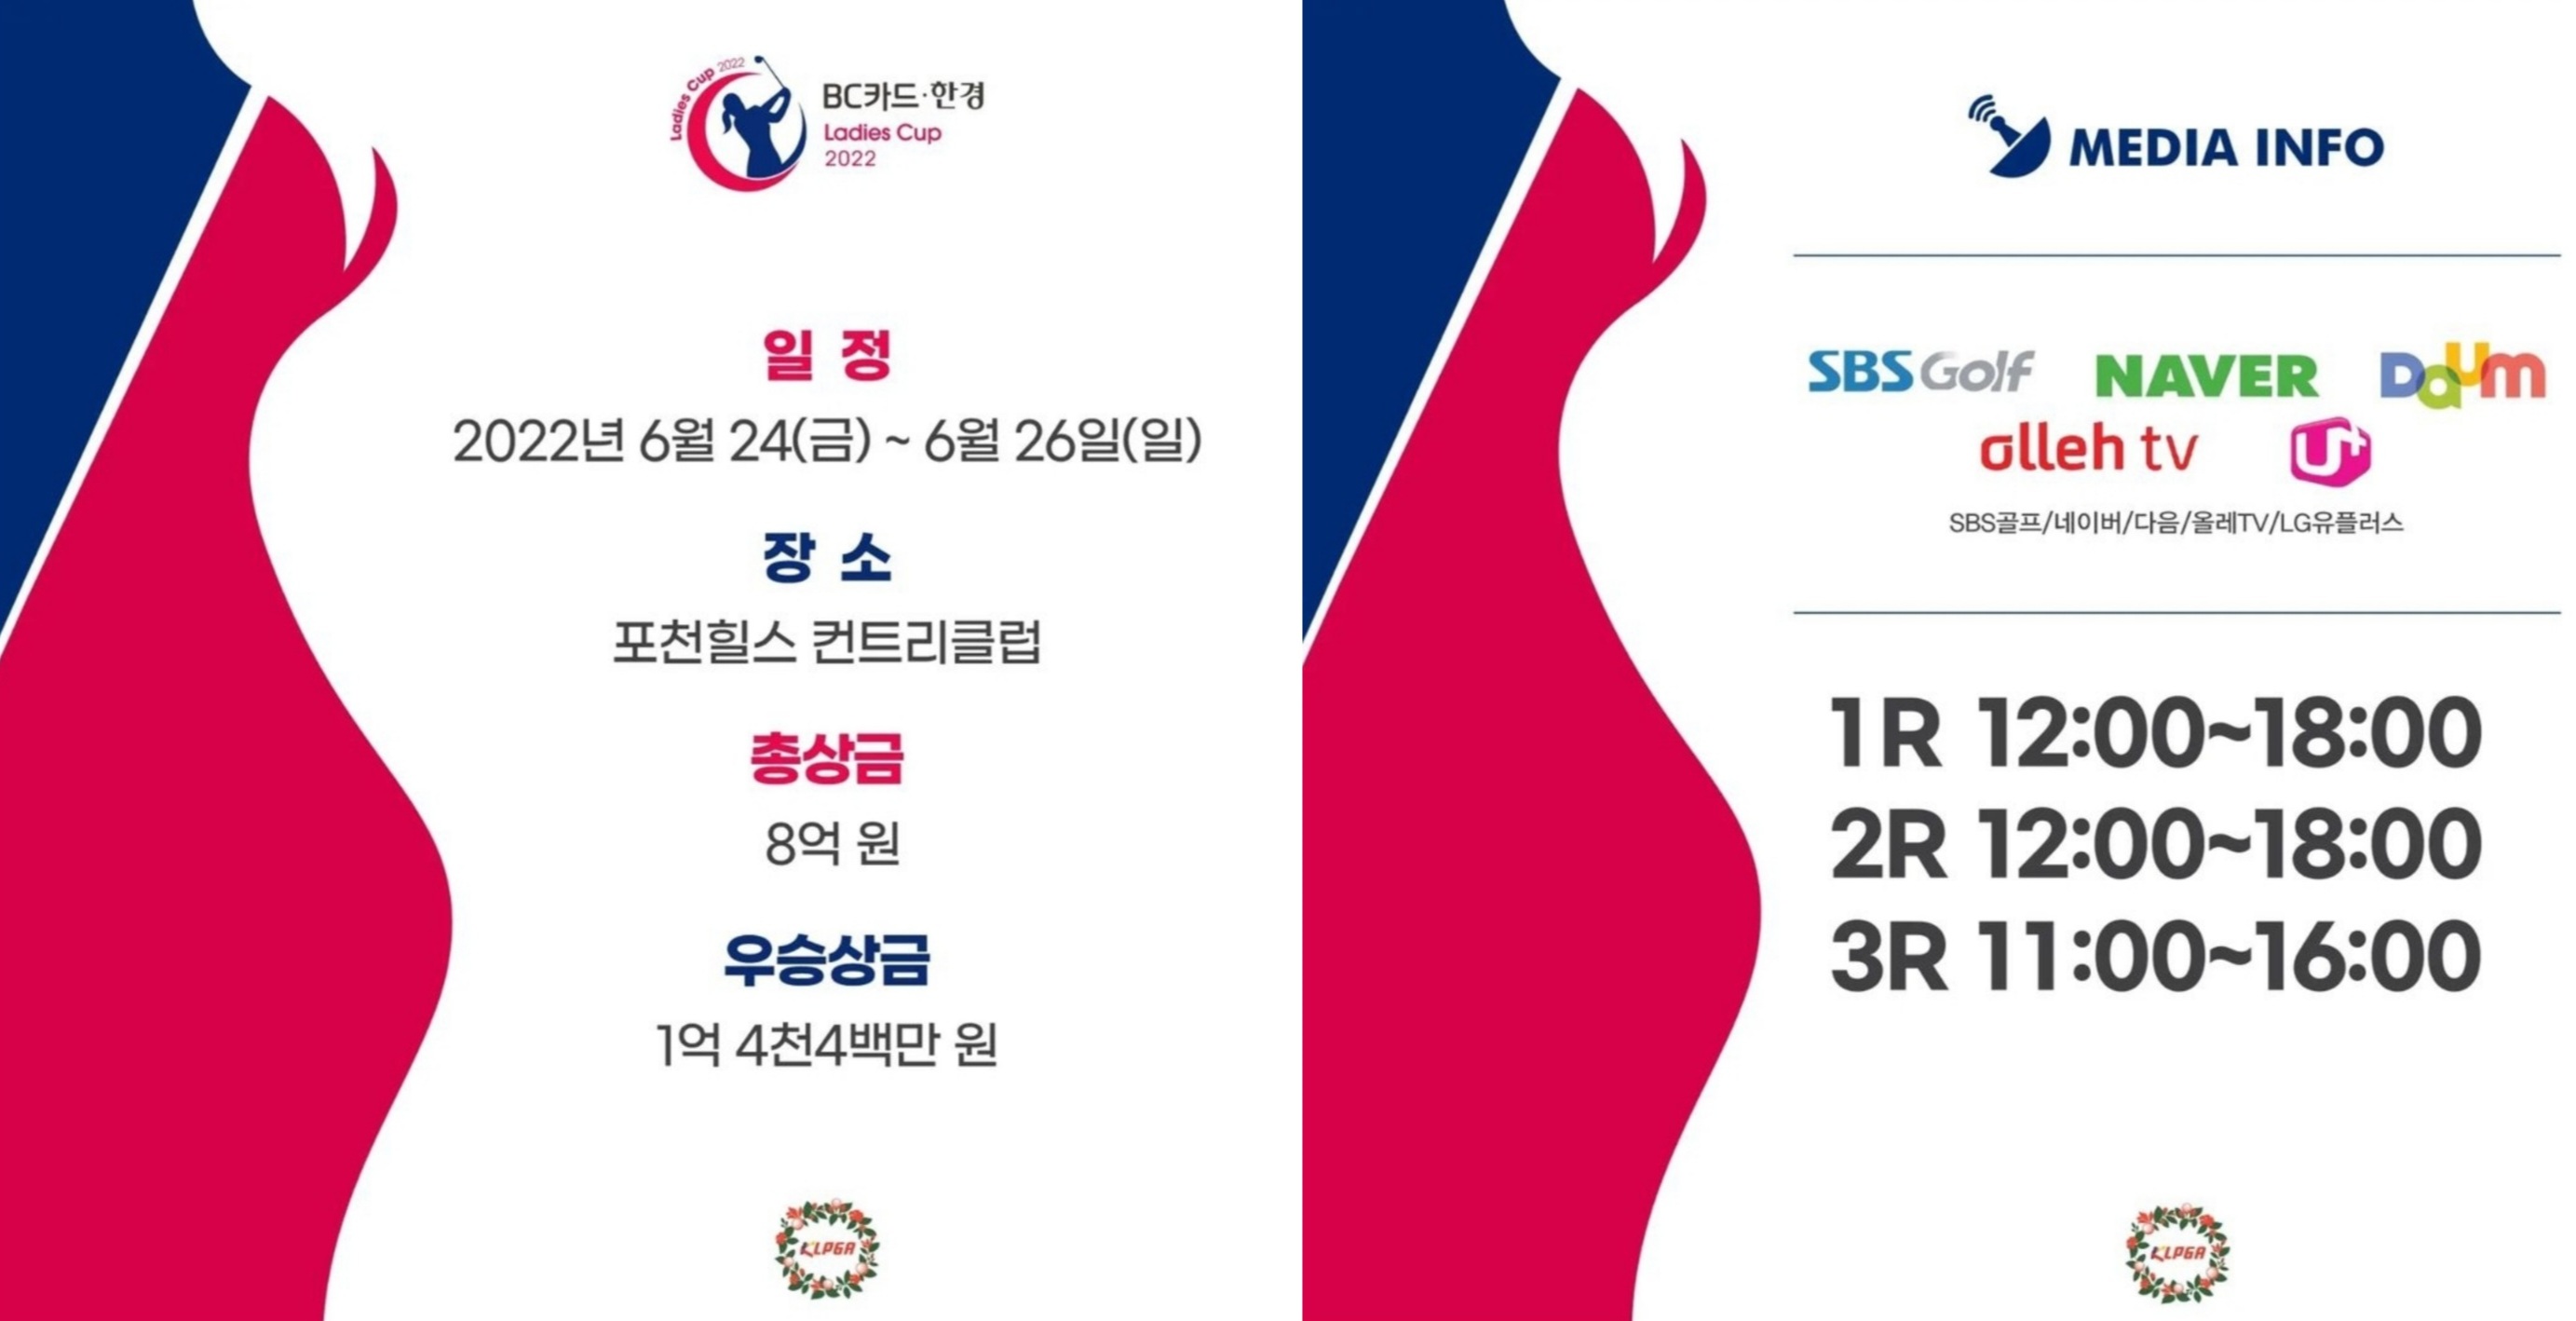 BC카드 한경 레이디스컵 2022 프리뷰 ⓒKLPGA SNS